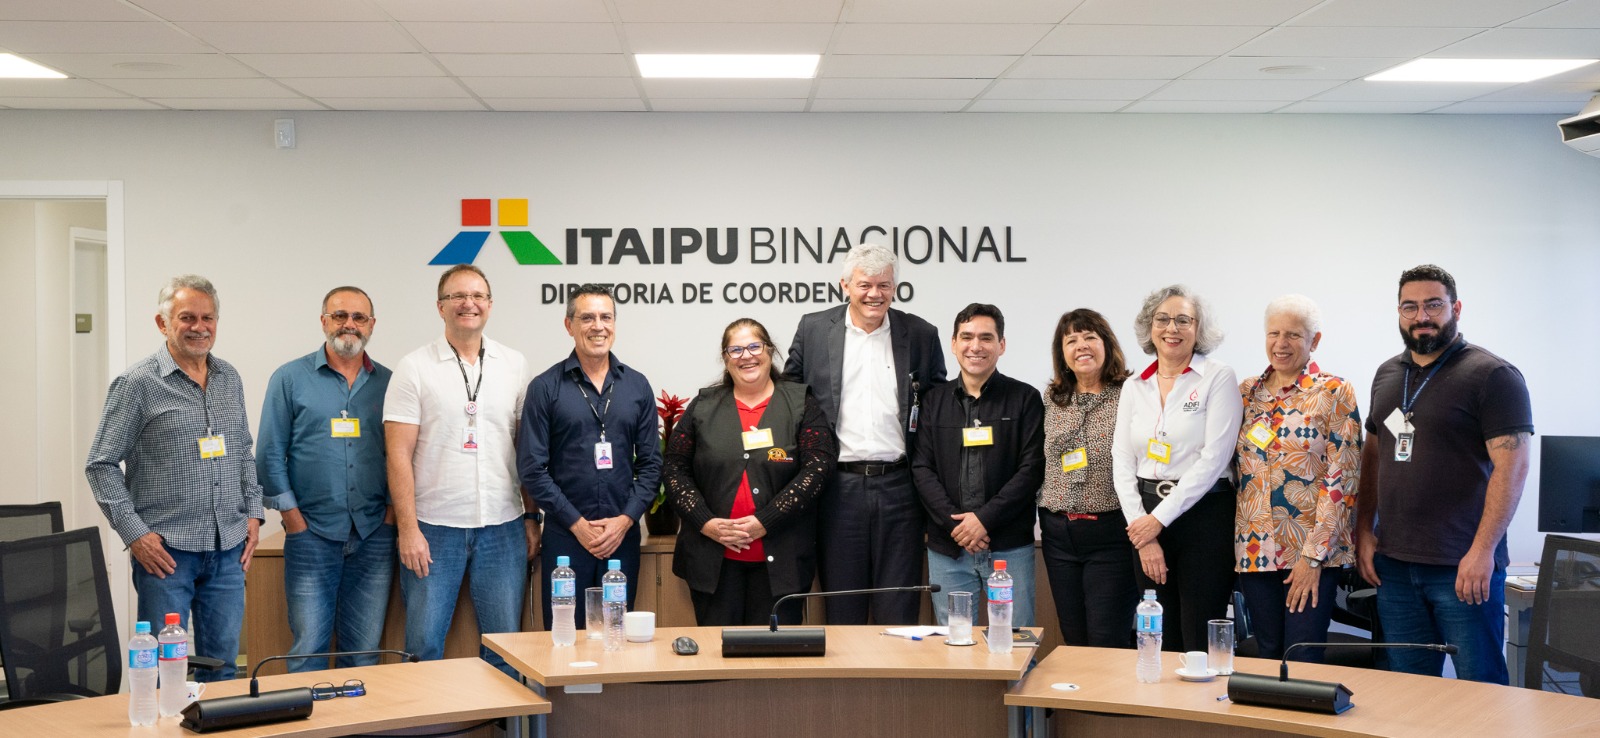 Marcio Rosa articula reunião na Itaipu em defesa dos diabéticos e apoio às mulheres